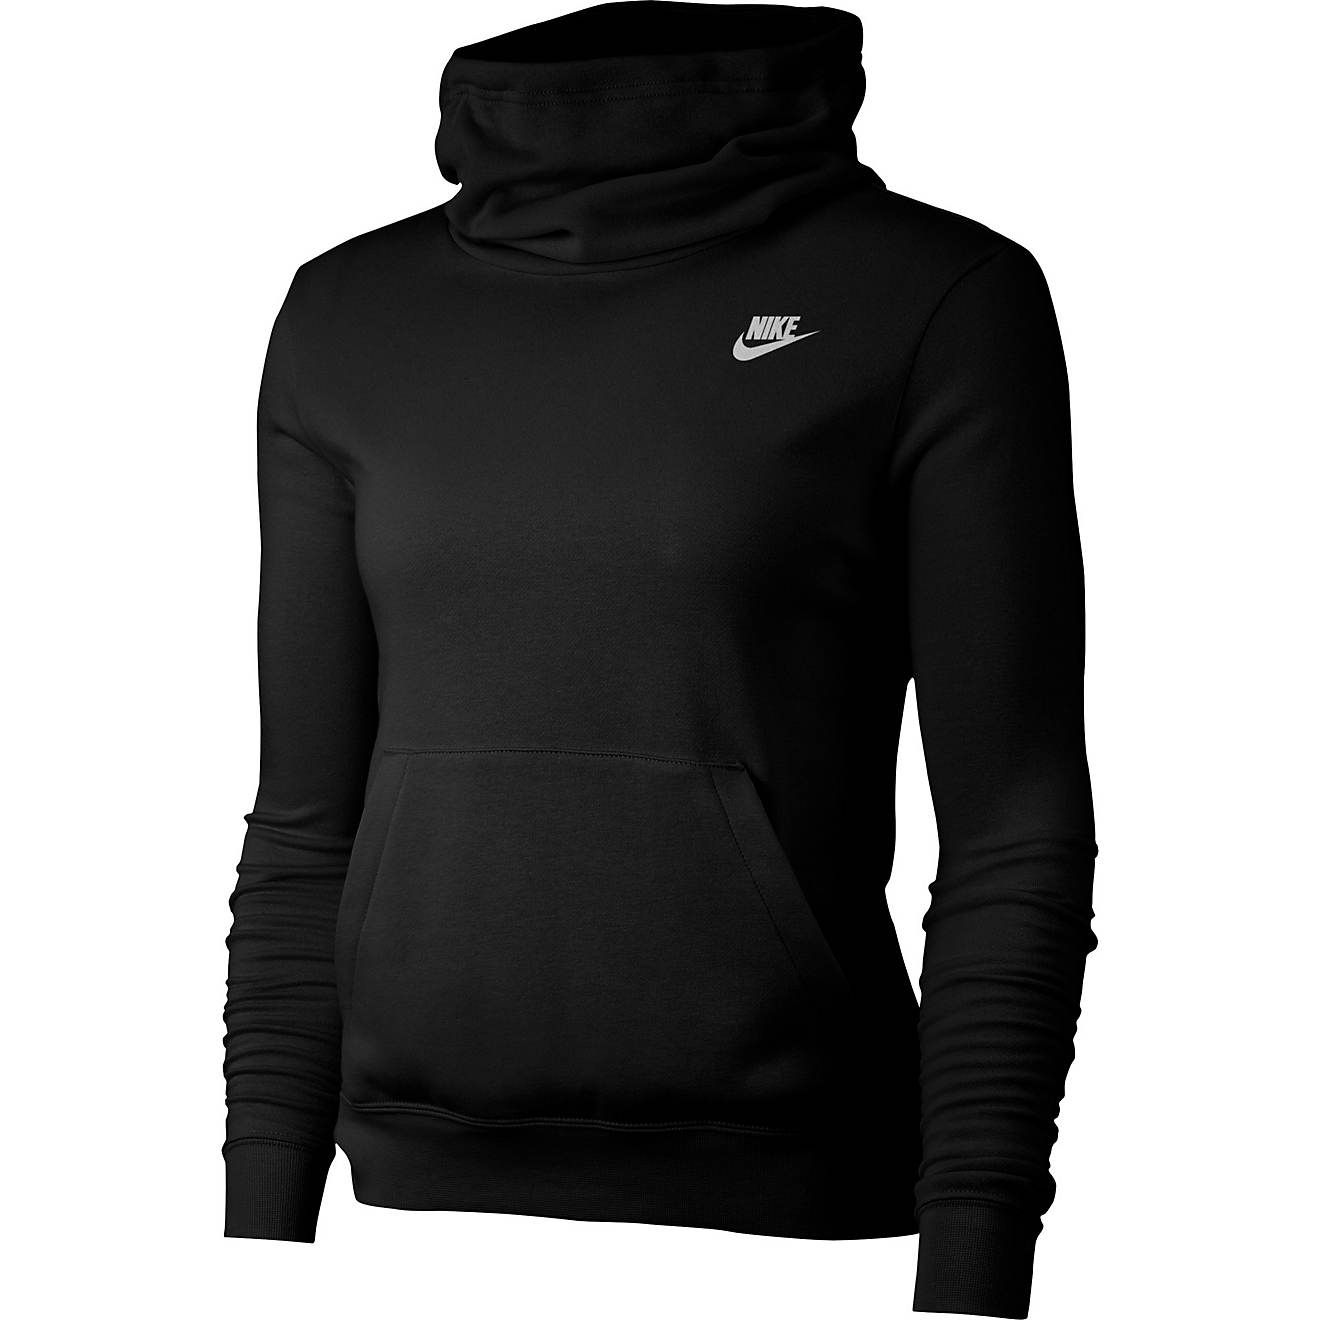 Nike Women's Nike Sportswear Funnel-Neck Club Fleece Hoodie Sweatshirt | Academy Sports + Outdoor Affiliate